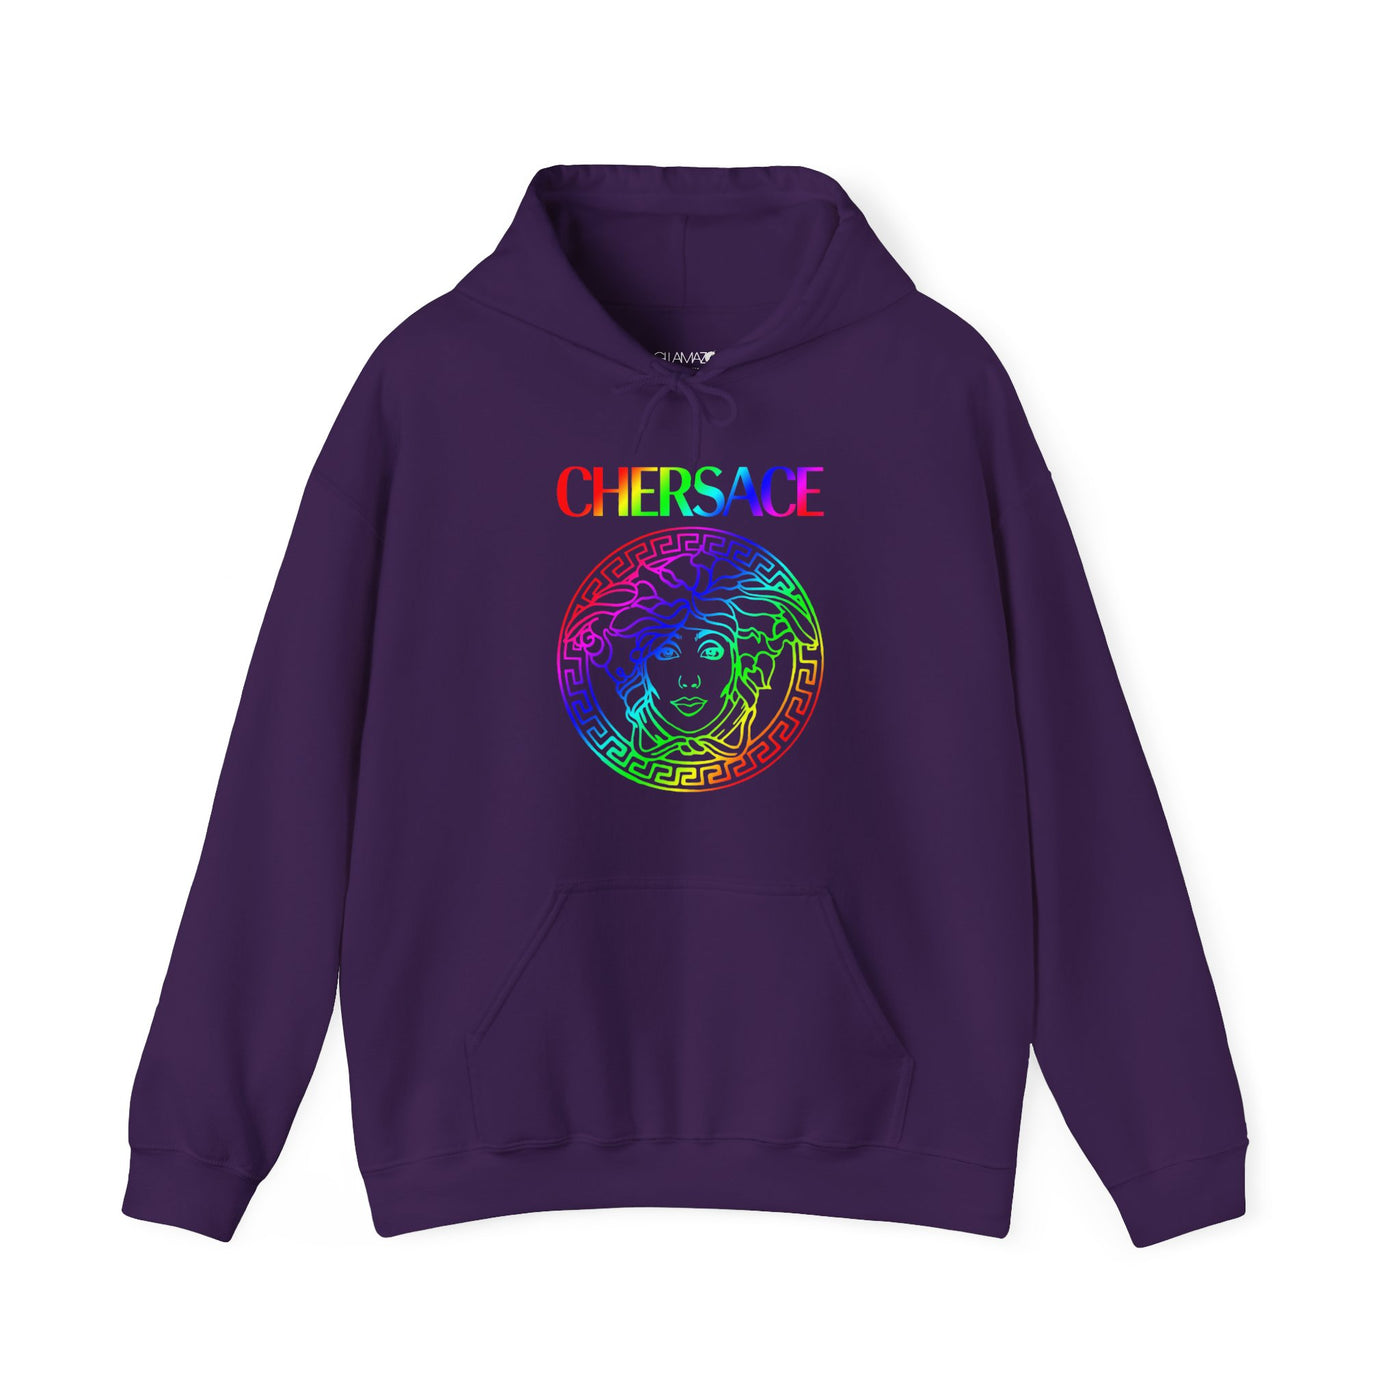 Shop Cher CHERSACE Premium Hoodie by Gllamazon. Color: Purple.